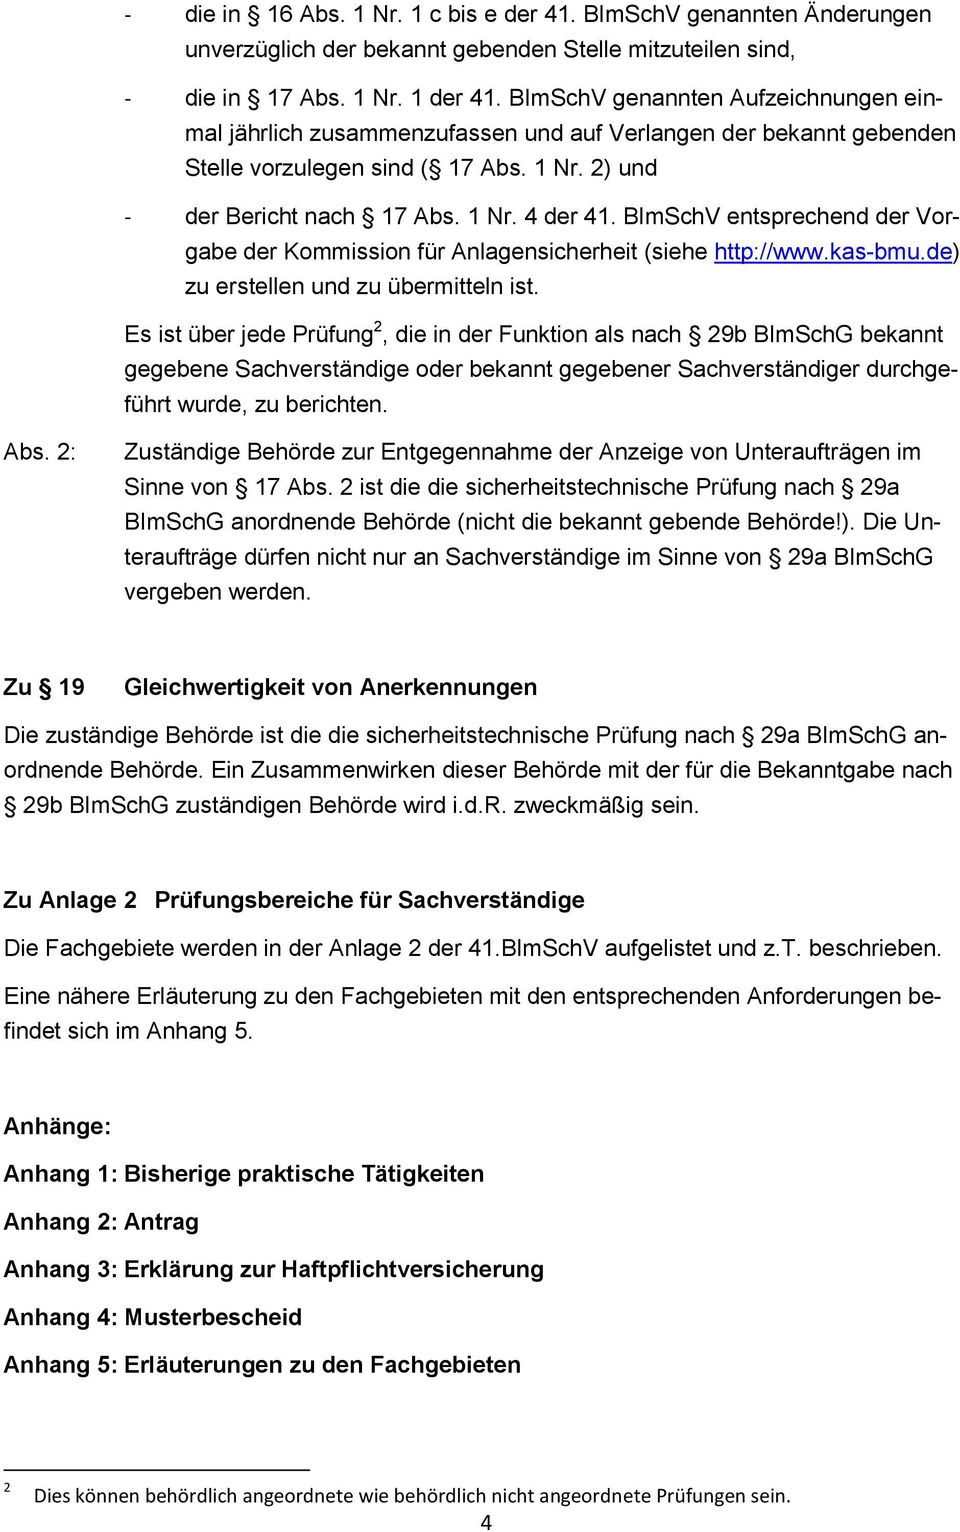 BImSchV entsprechend der Vorgabe der Kommission für Anlagensicherheit (siehe http://www.kas-bmu.de) zu erstellen und zu übermitteln ist.